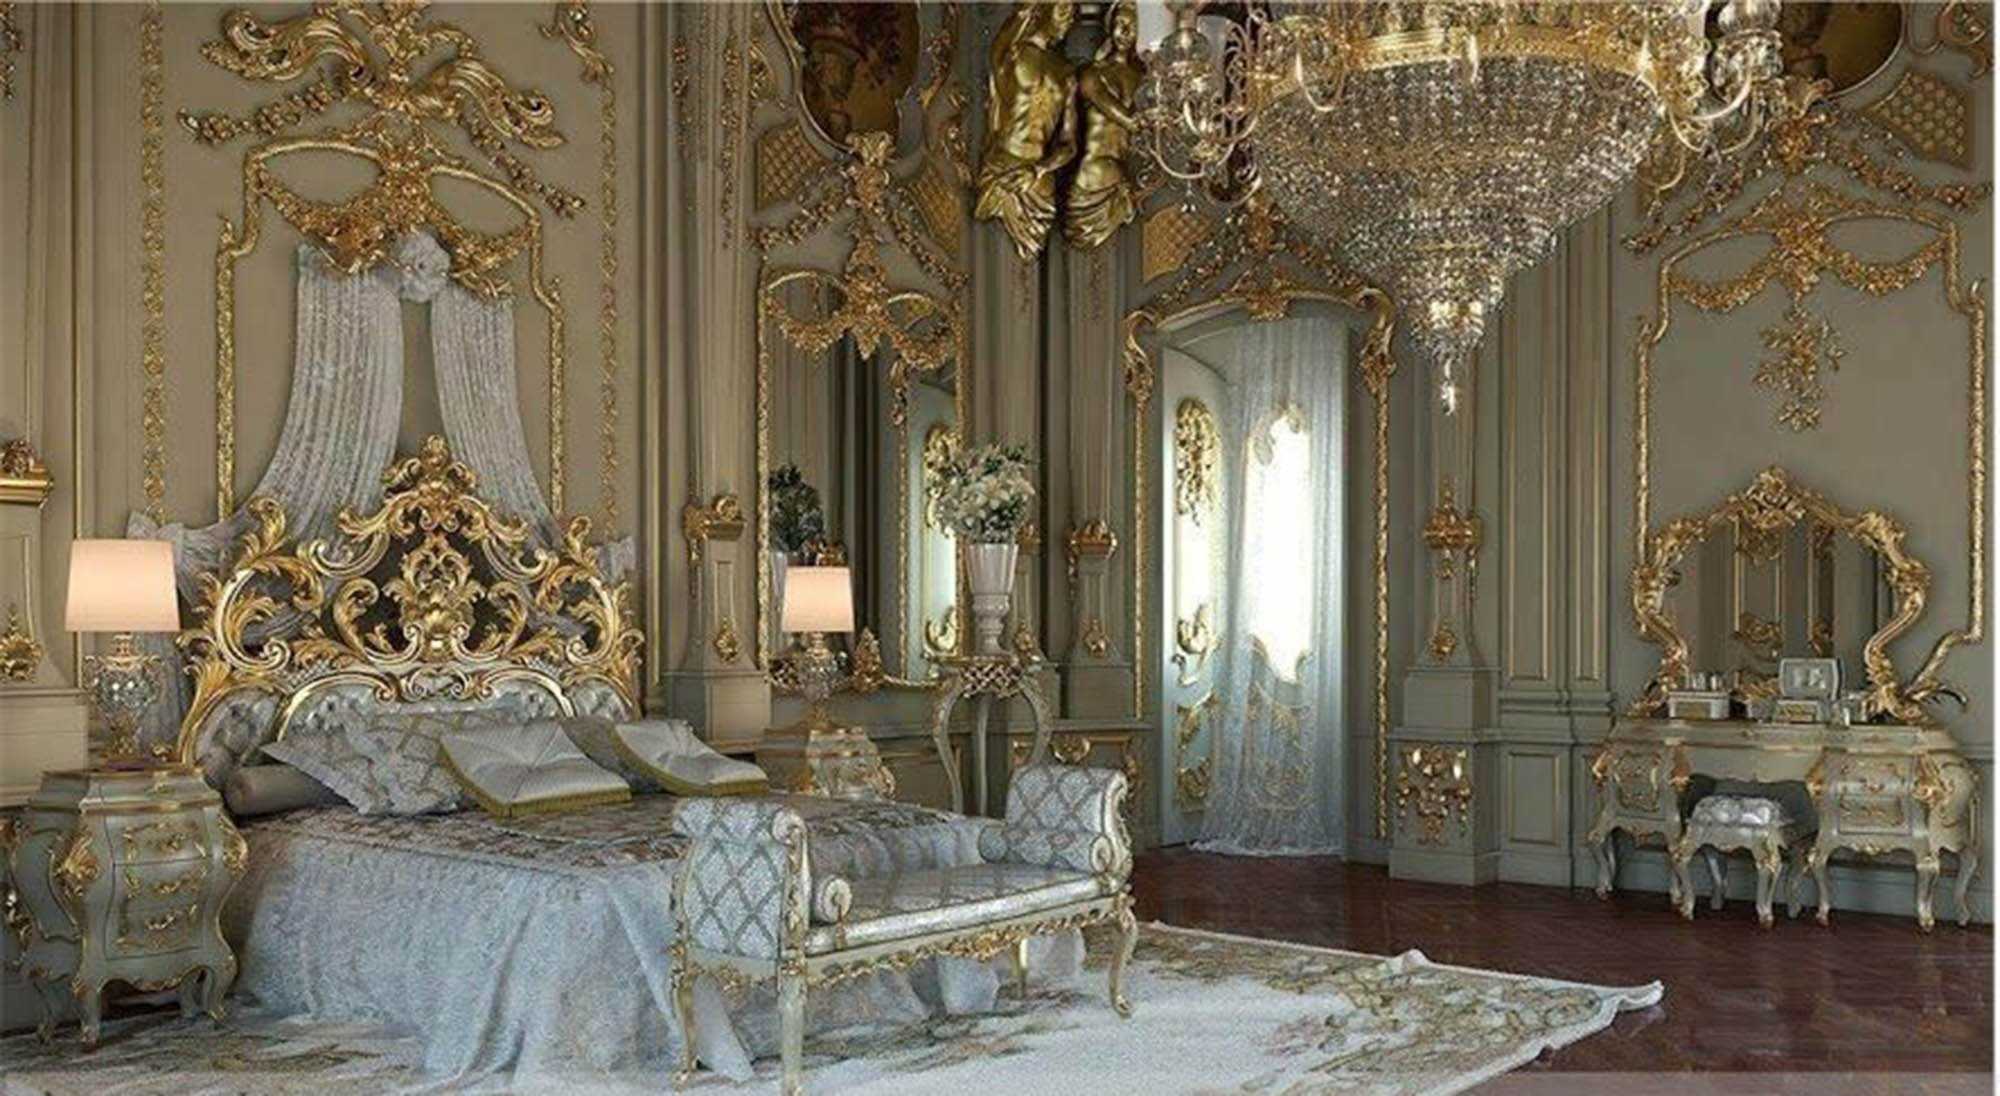 Описание комнаты в стиле барокко